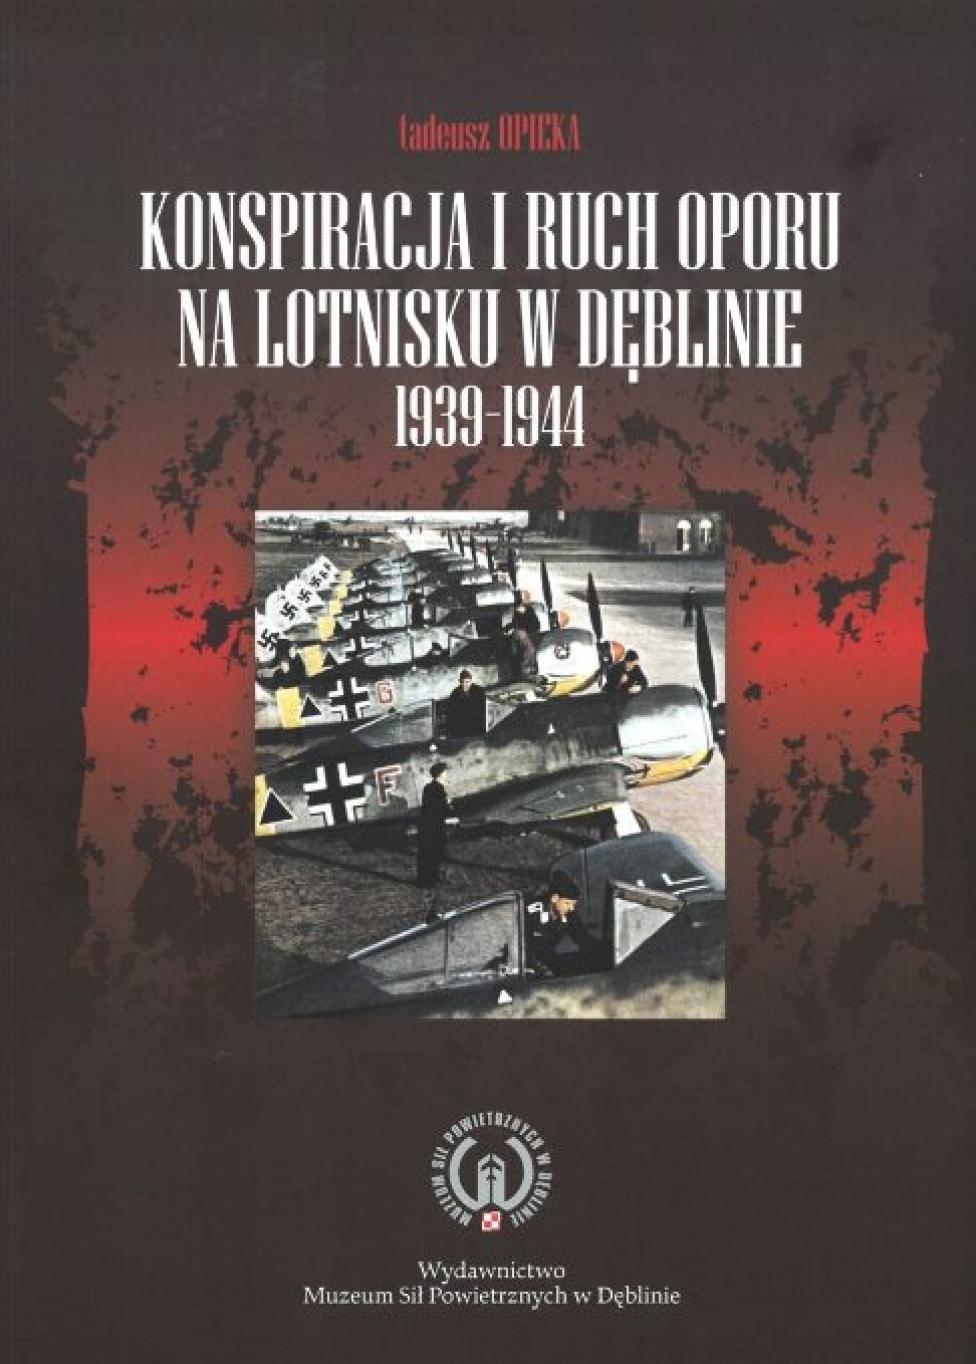 Książka "Konspiracja i ruch oporu na lotnisku w Dęblinie 1939-1944" (fot. muzeumsp.pl)